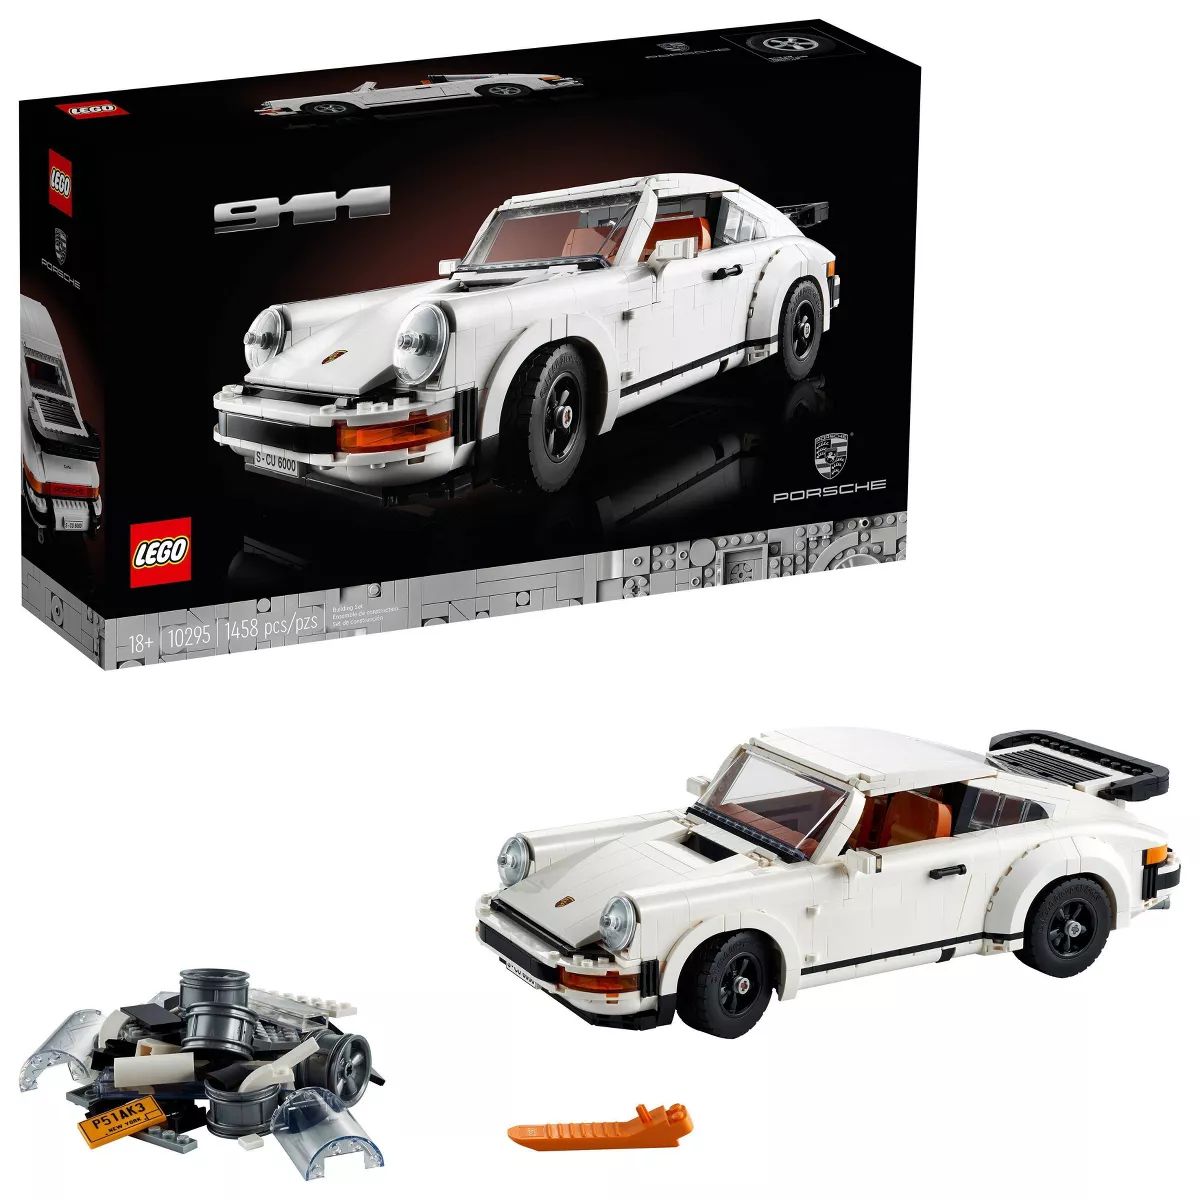 LEGO Icons Porsche 911 Collectible Car Model Kit 10295 | Target